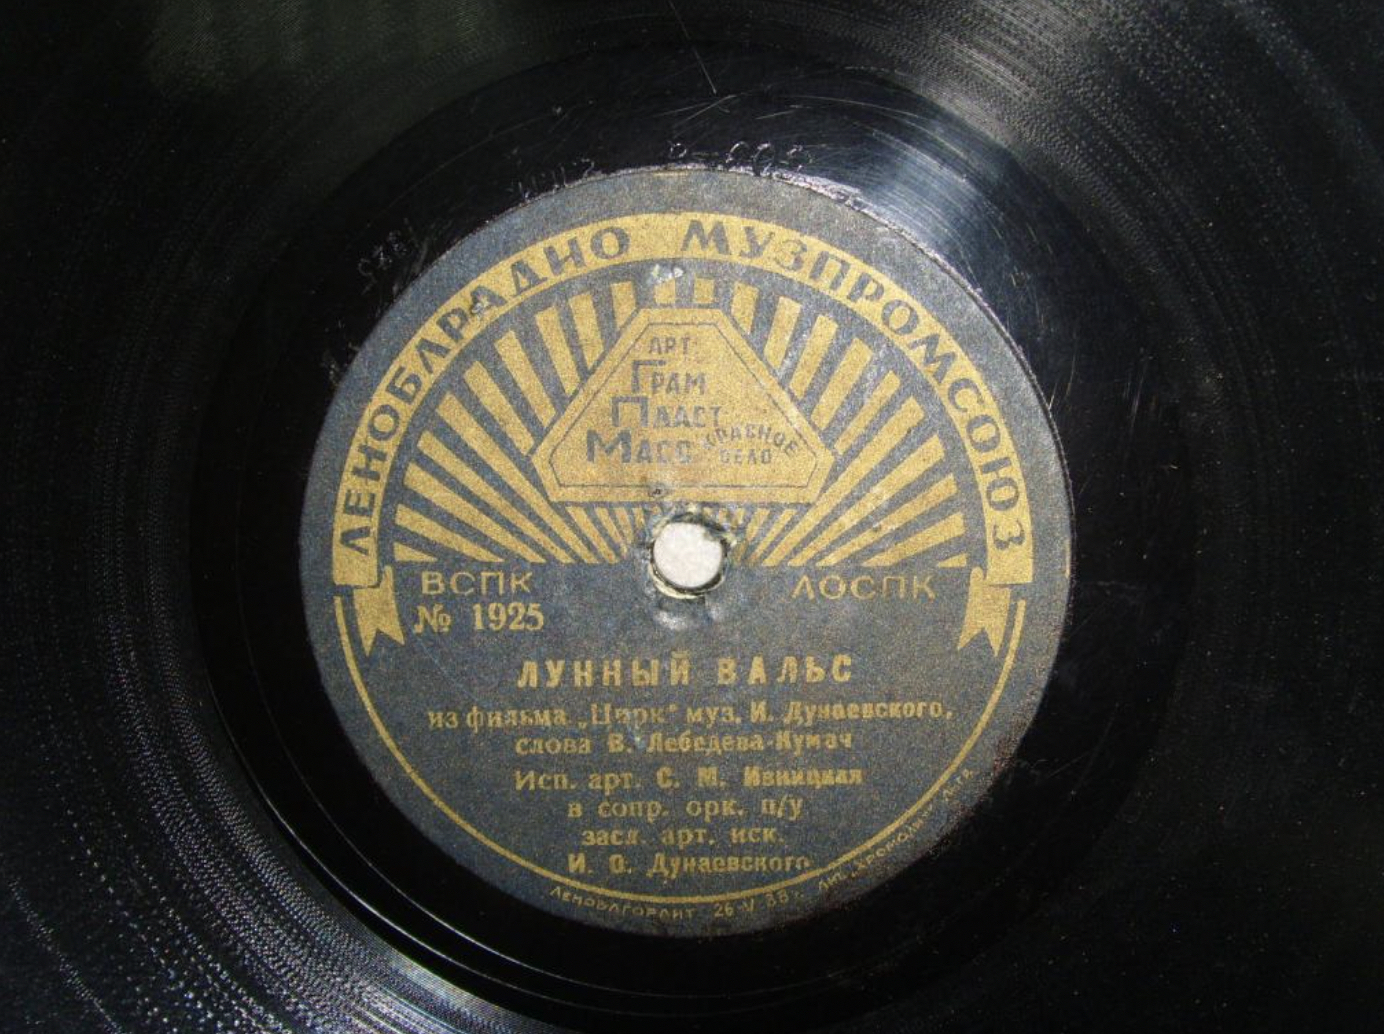 Антонов песни лунная. Пластинки 30-х годов. Винил 30-е годы. Грампластинка 30 мл. Лунный вальс.